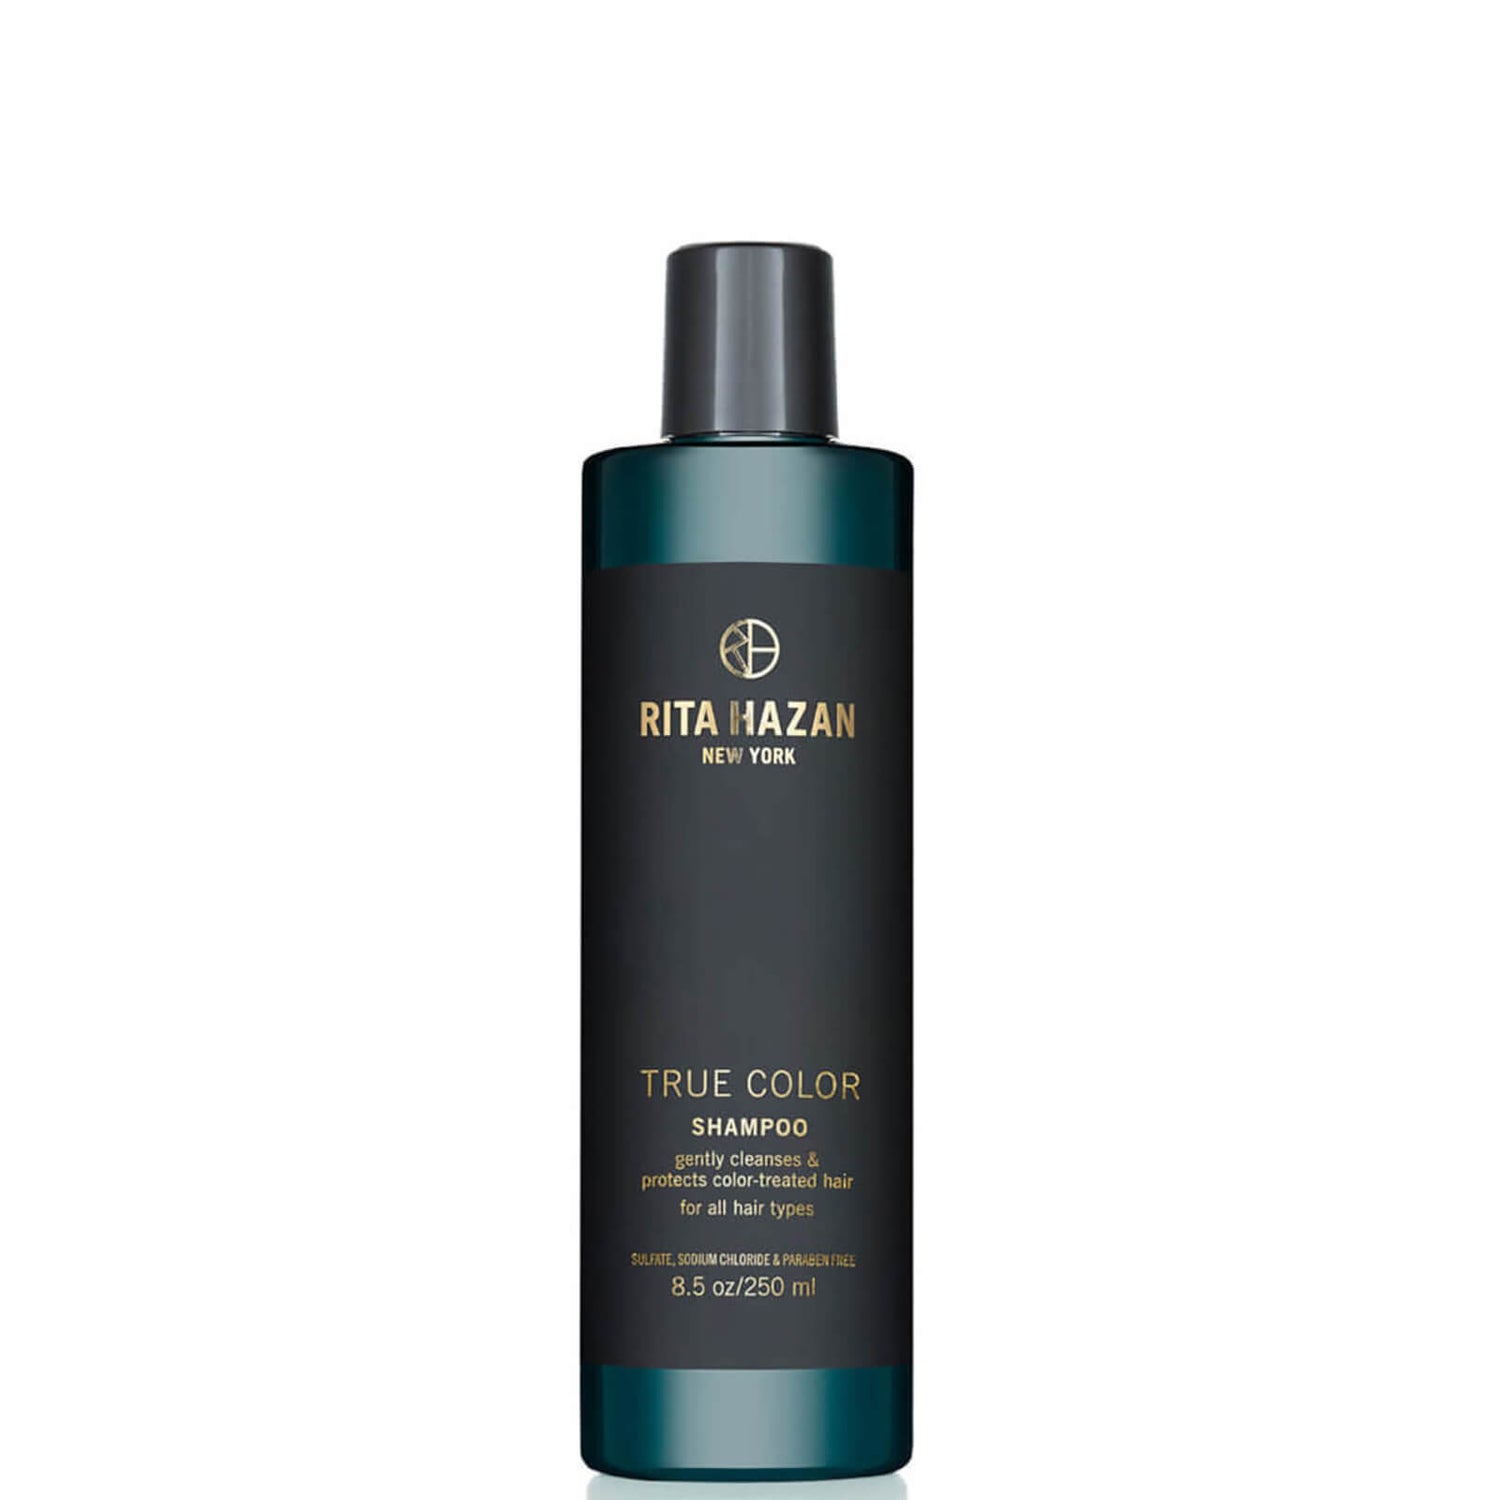 Rita Hazan True Color Shampoo (8.5 oz.)